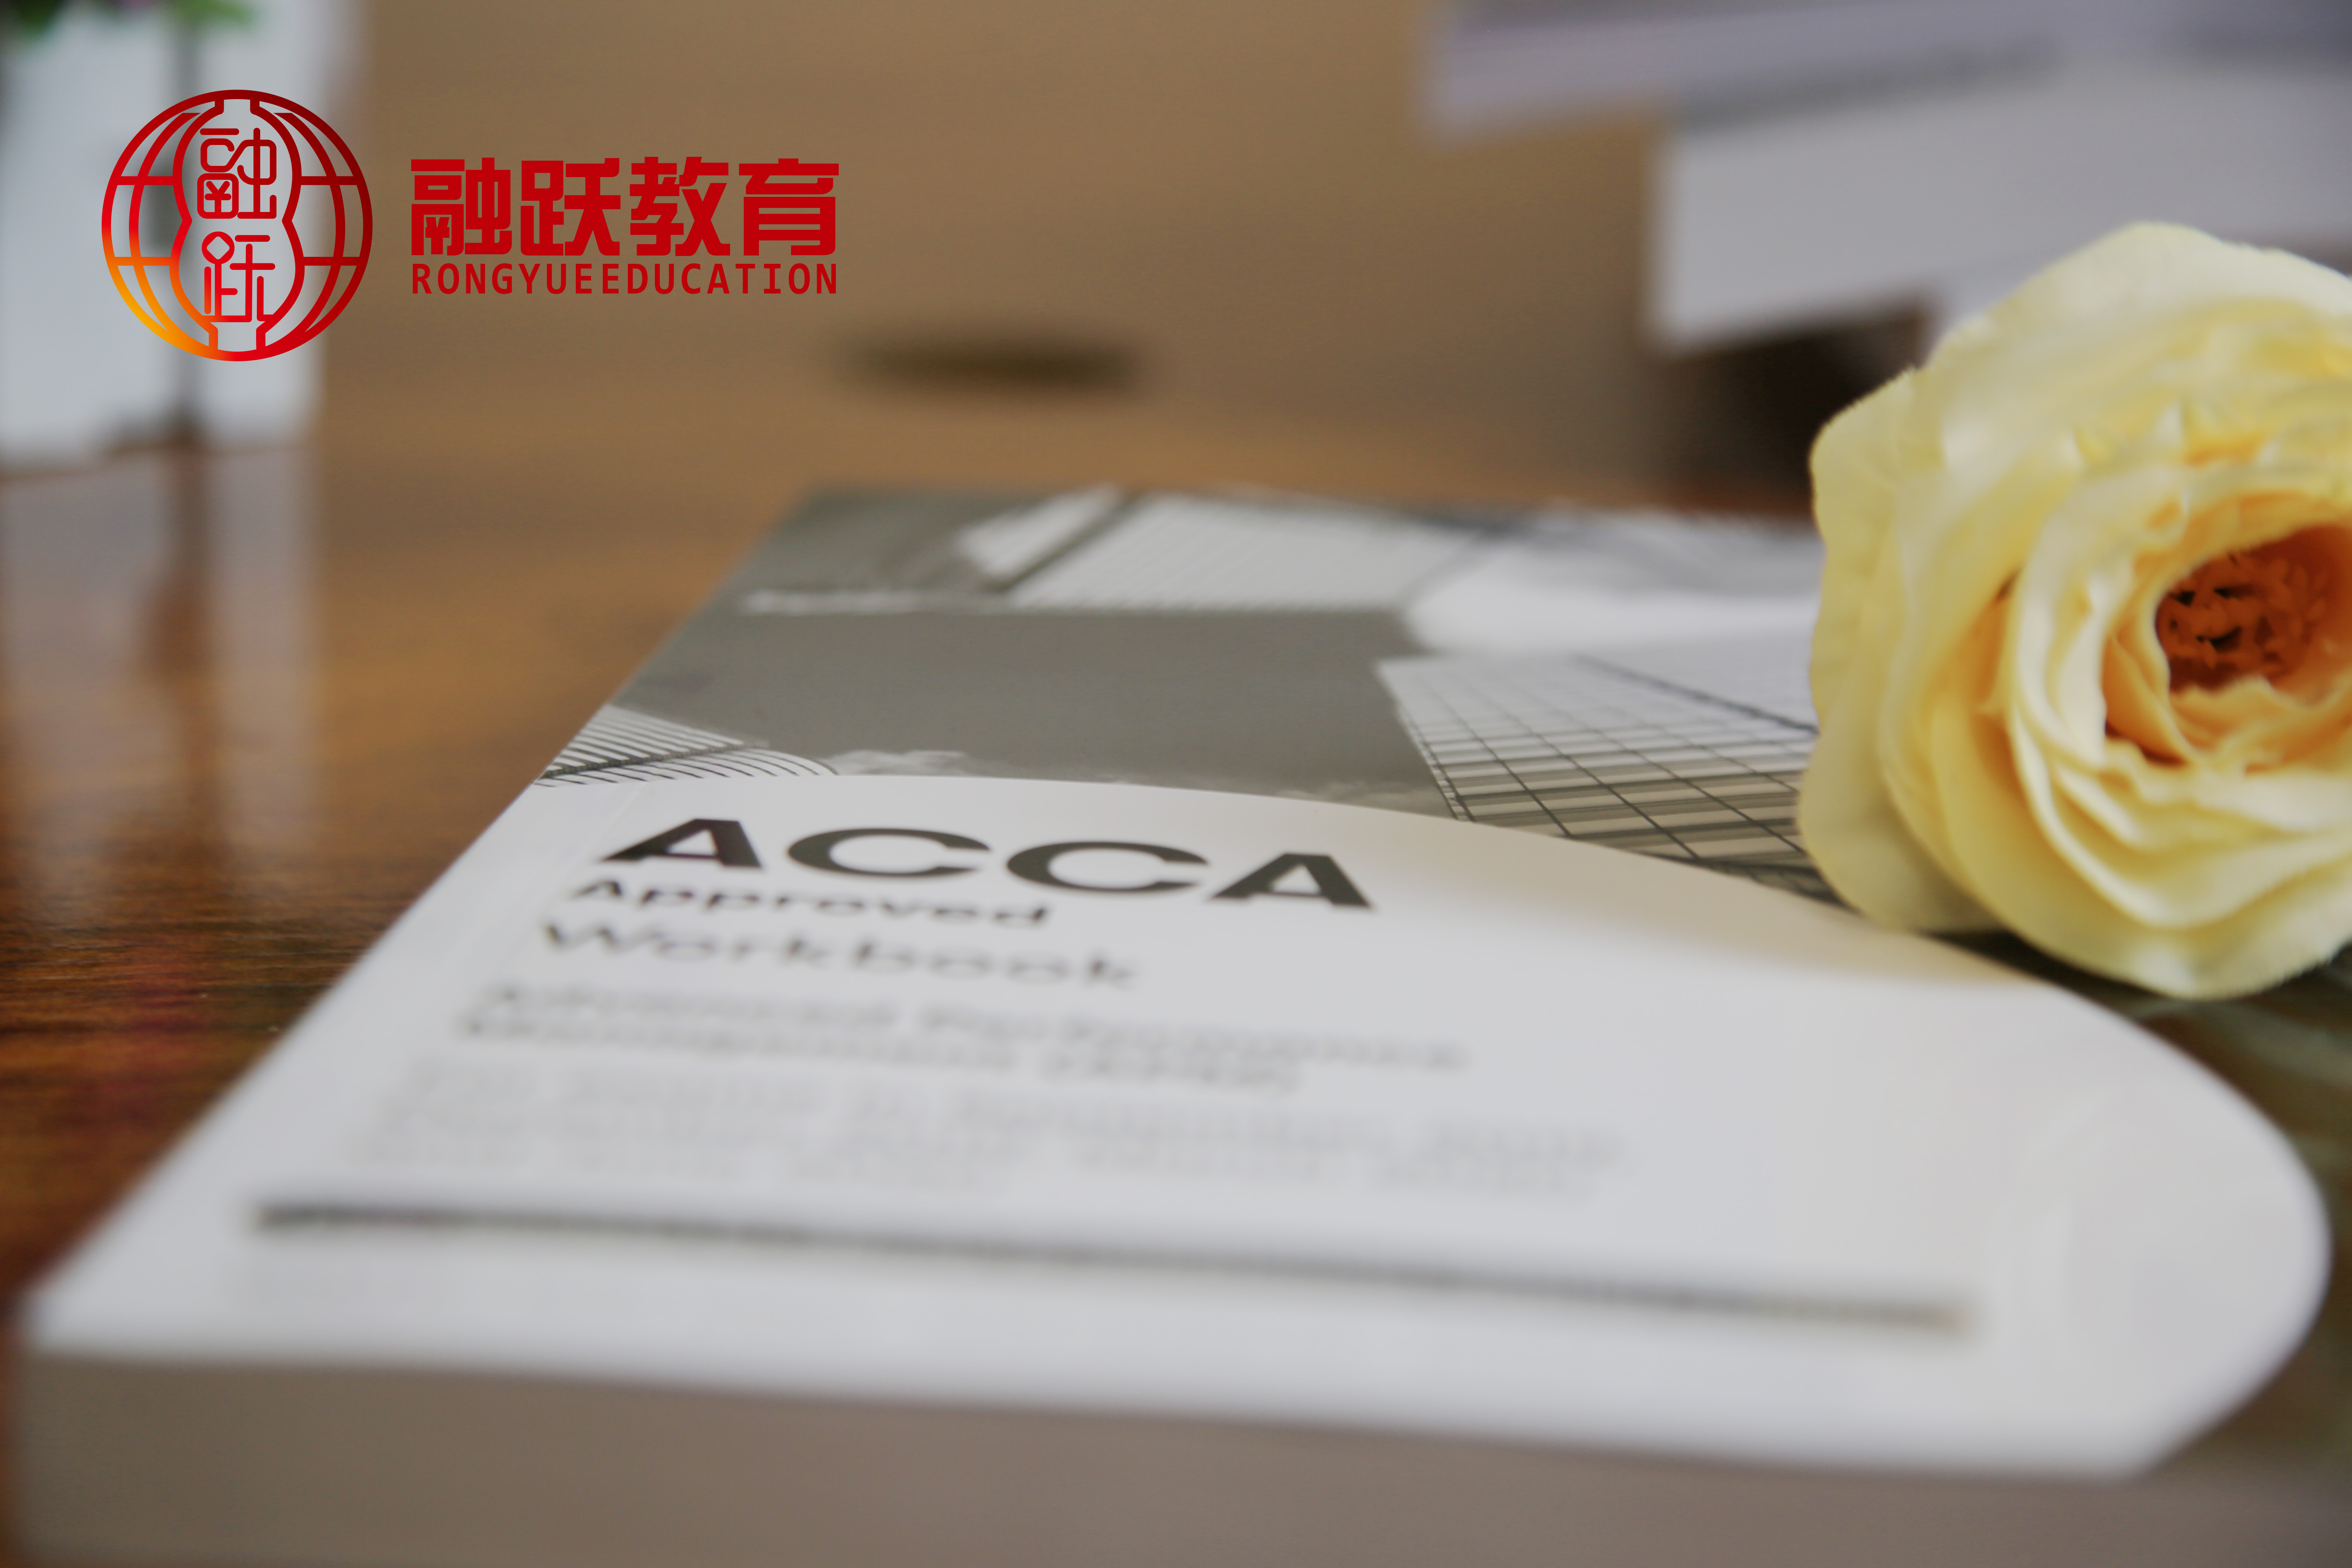 哪一类人才适合考ACCA证书呢？